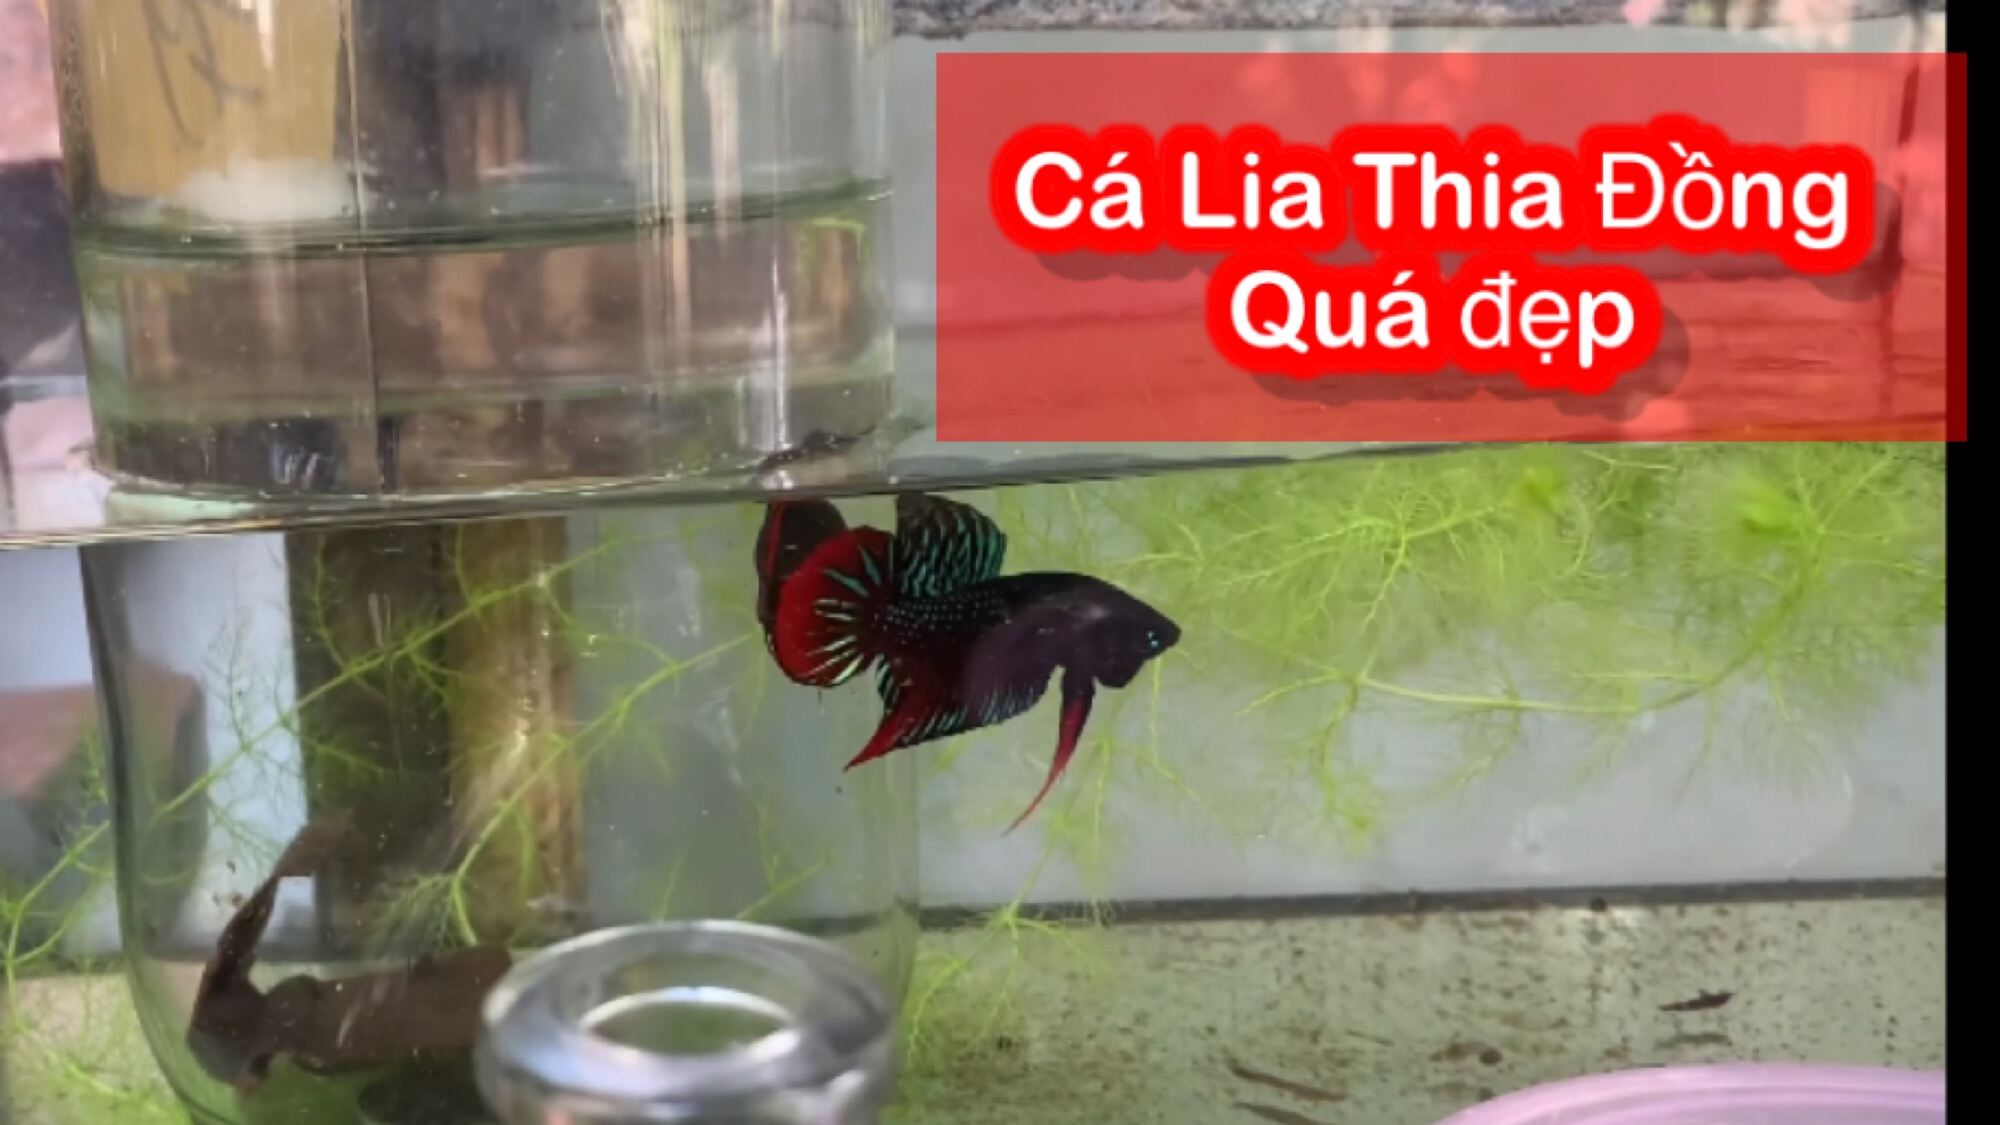 Cá Lia Thia Đồng sai lớn